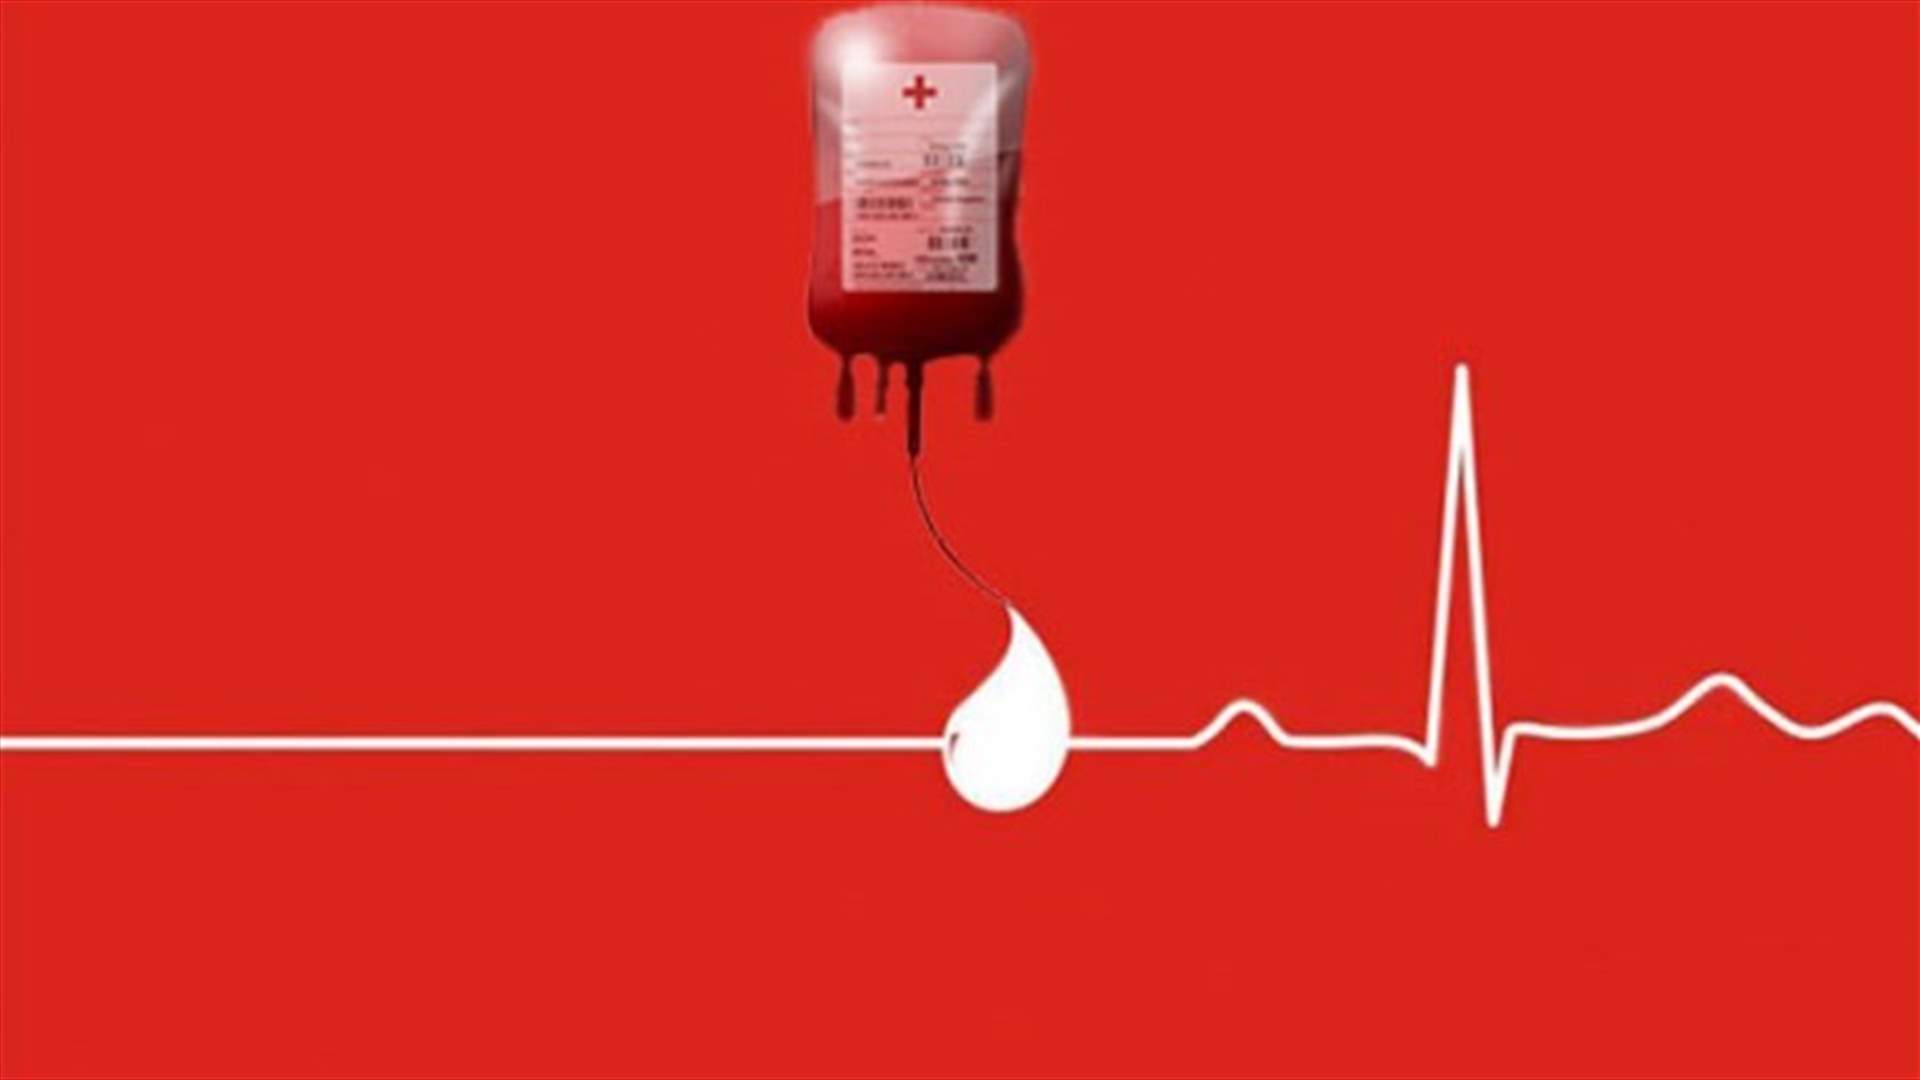 مريضة بحاجة ماسة لوحدتي دم من فئة +O. للتبرع لدى مراكز الصليب الأحمر الإتصال على الرقم: ٠٣/٣٩٨٣٩١